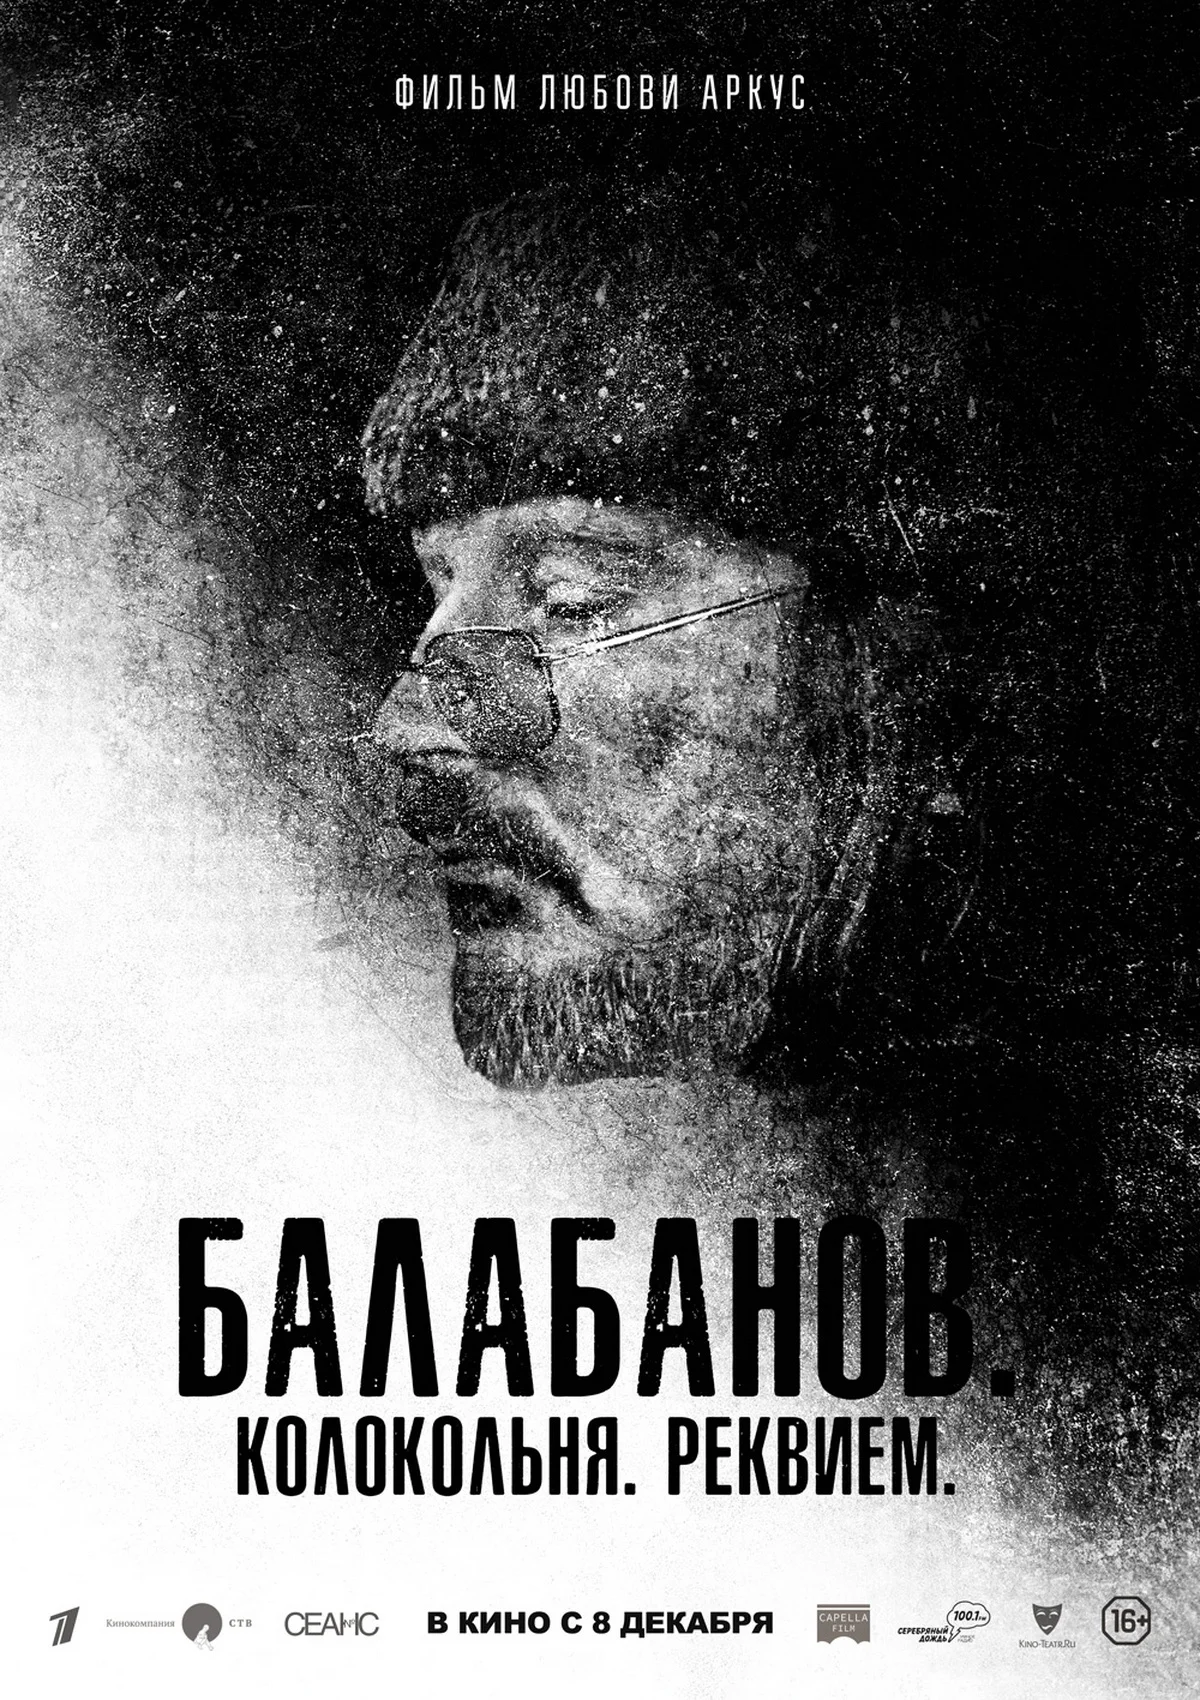 Документальный фильм про Алексея Балабанова от Любови Аркус выйдет 8 декабря - фото 1